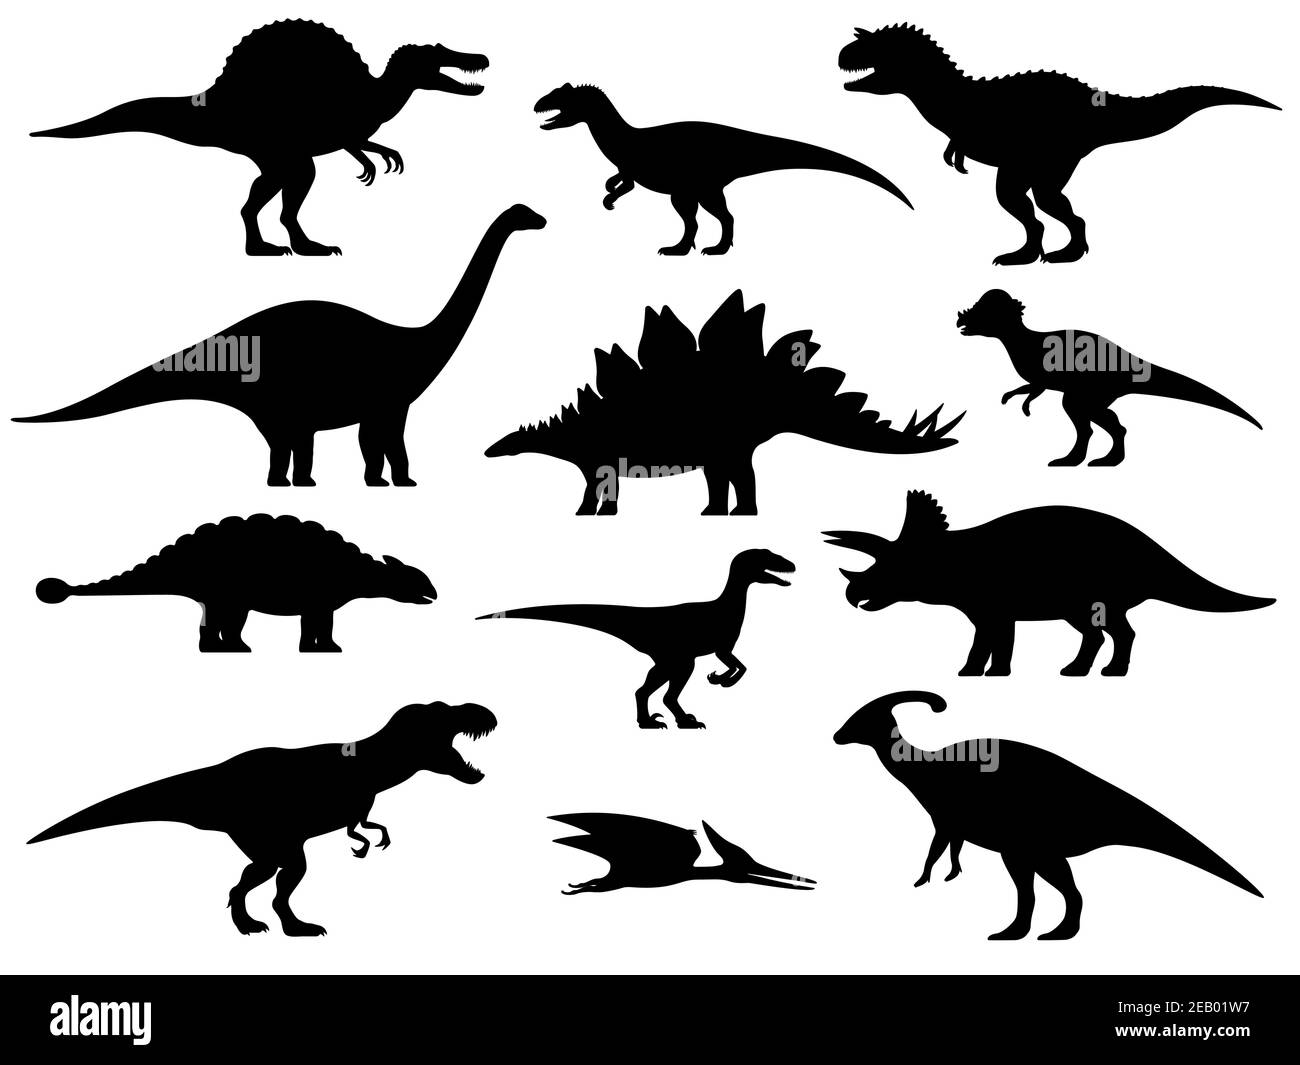 Setzen Sie Silhouetten von Dinosauriern. Vektor-Illustration Gruppe von schwarzen Dinosaurier Silhouette Symbole auf weiß isoliert. Logo Seitenansicht, Profil. Stock Vektor